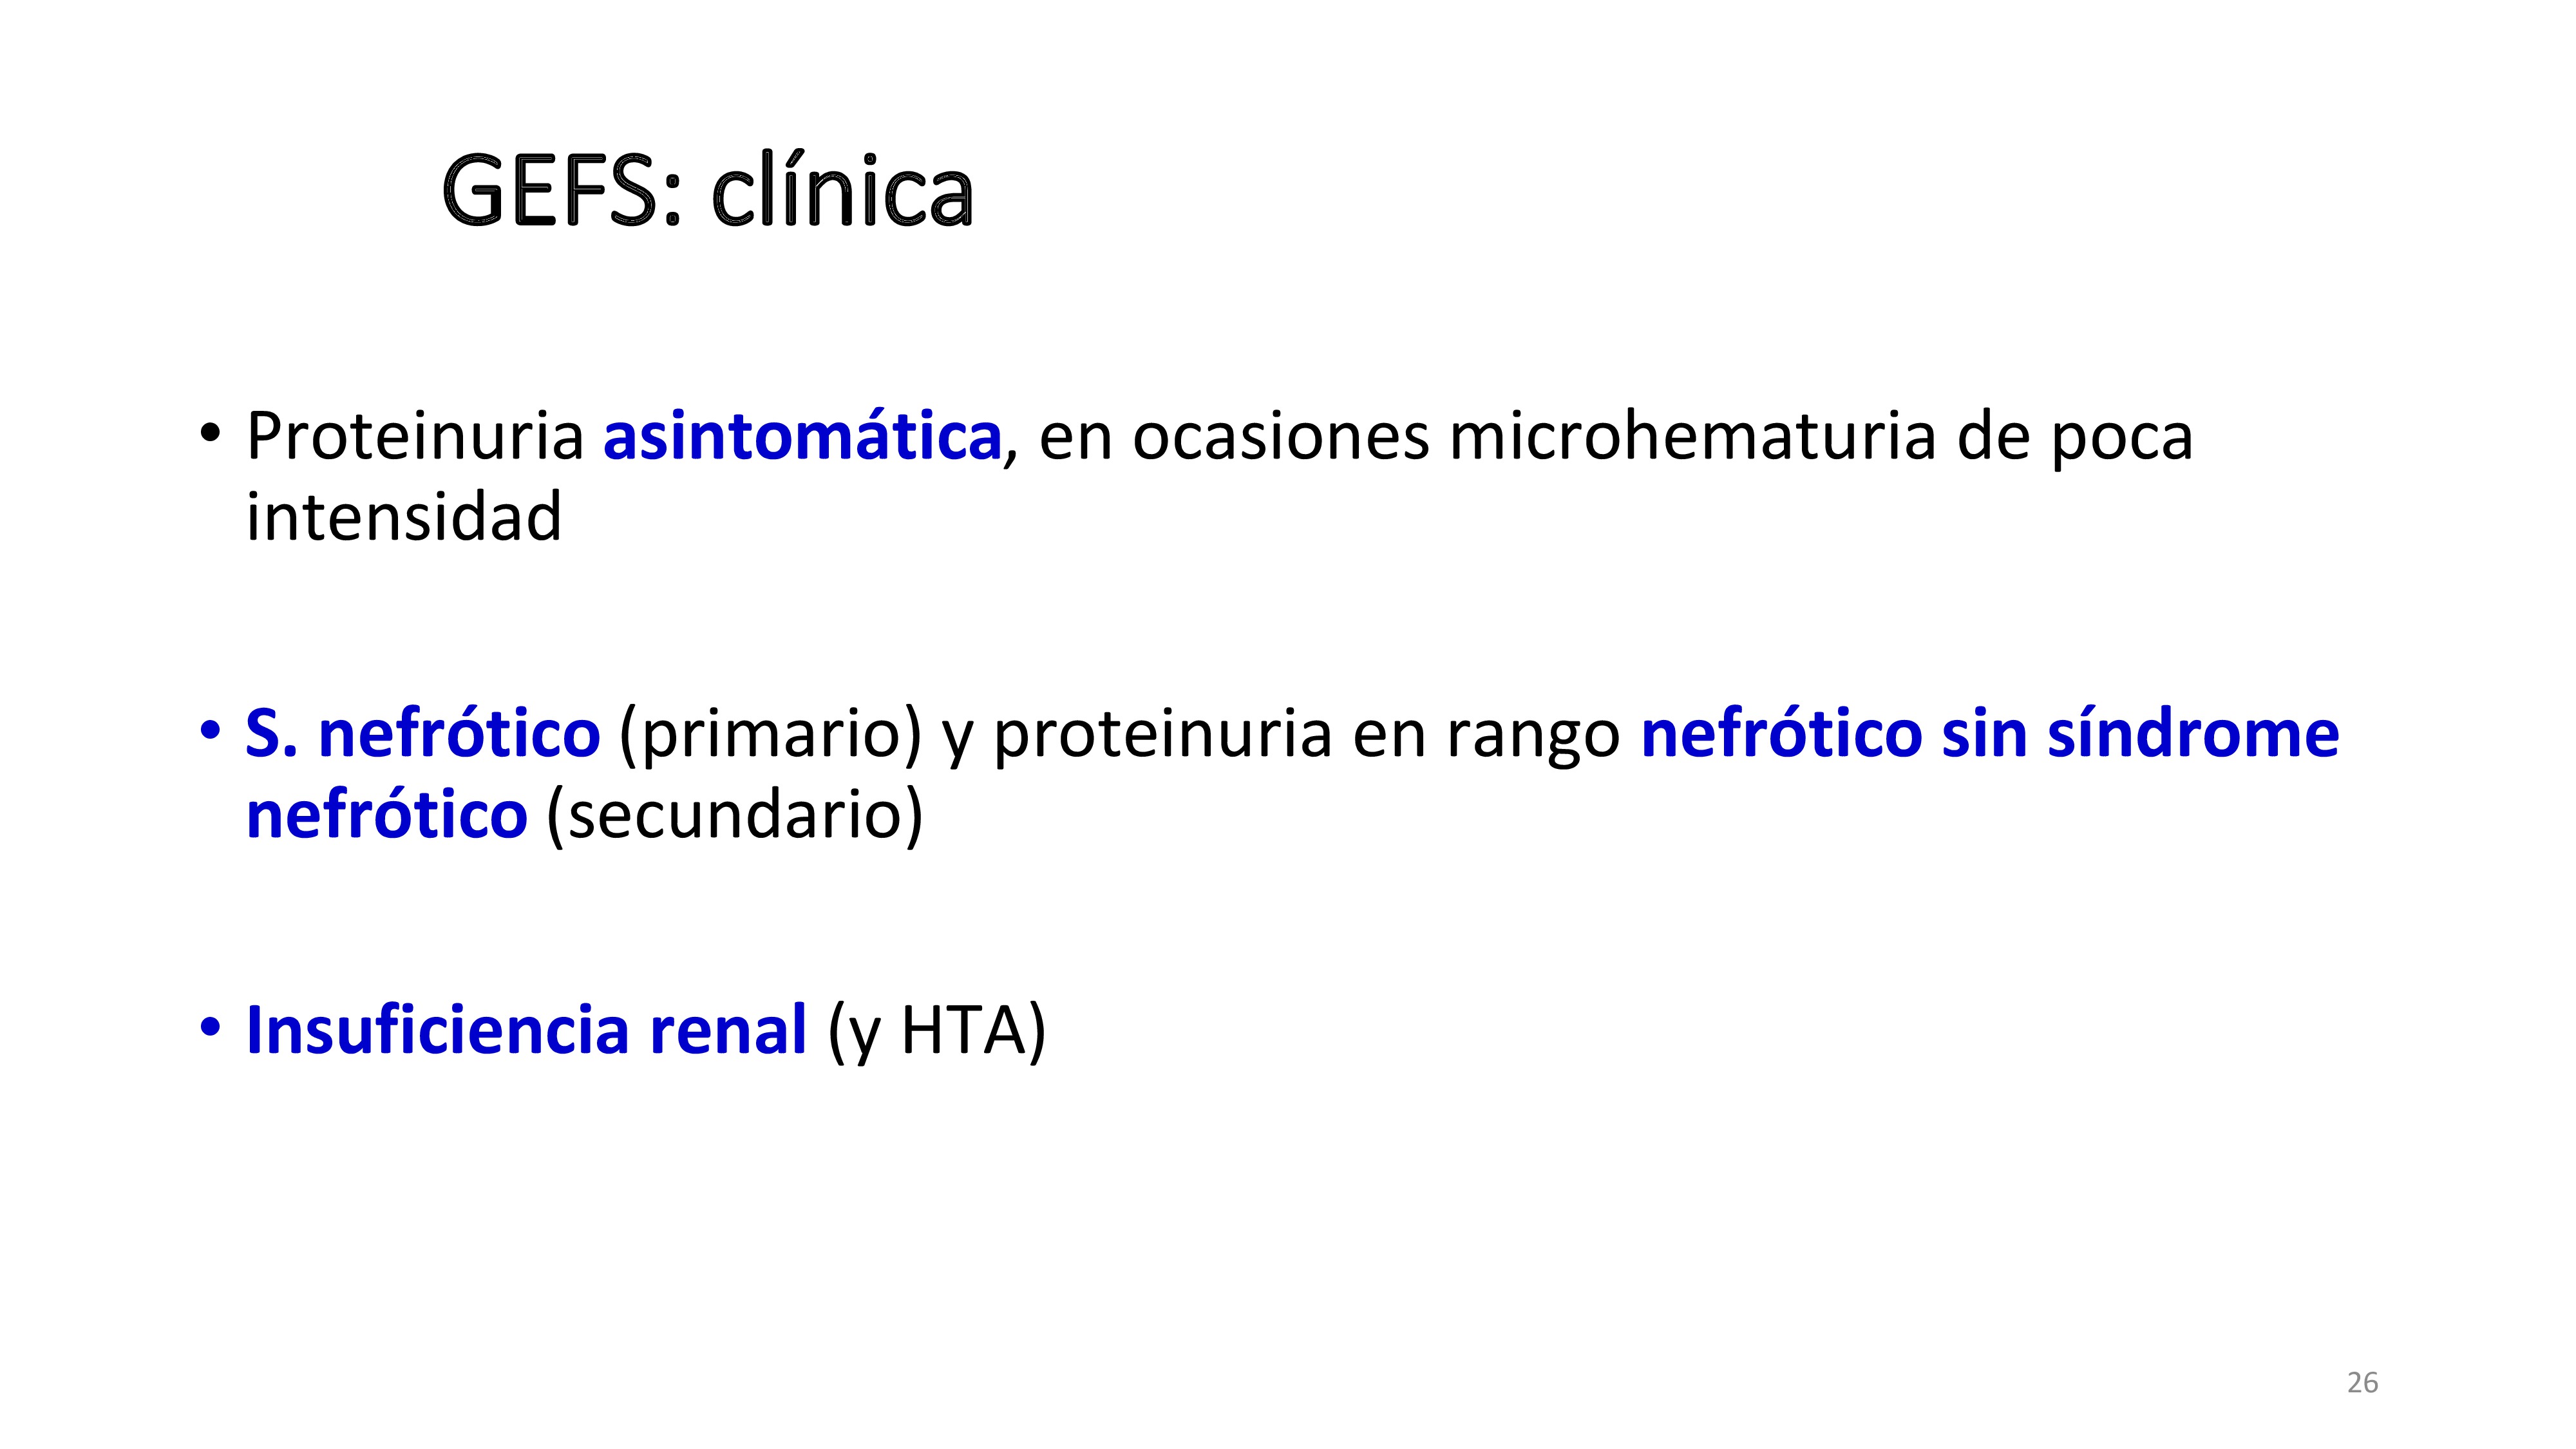 La GMN Fy S cursa con proteinuria que puede ser asintomática, síndrome nefrótico y proteinuria en rango nefrótico. Evoluciona con frecuencia alta a insuficiencia renal.